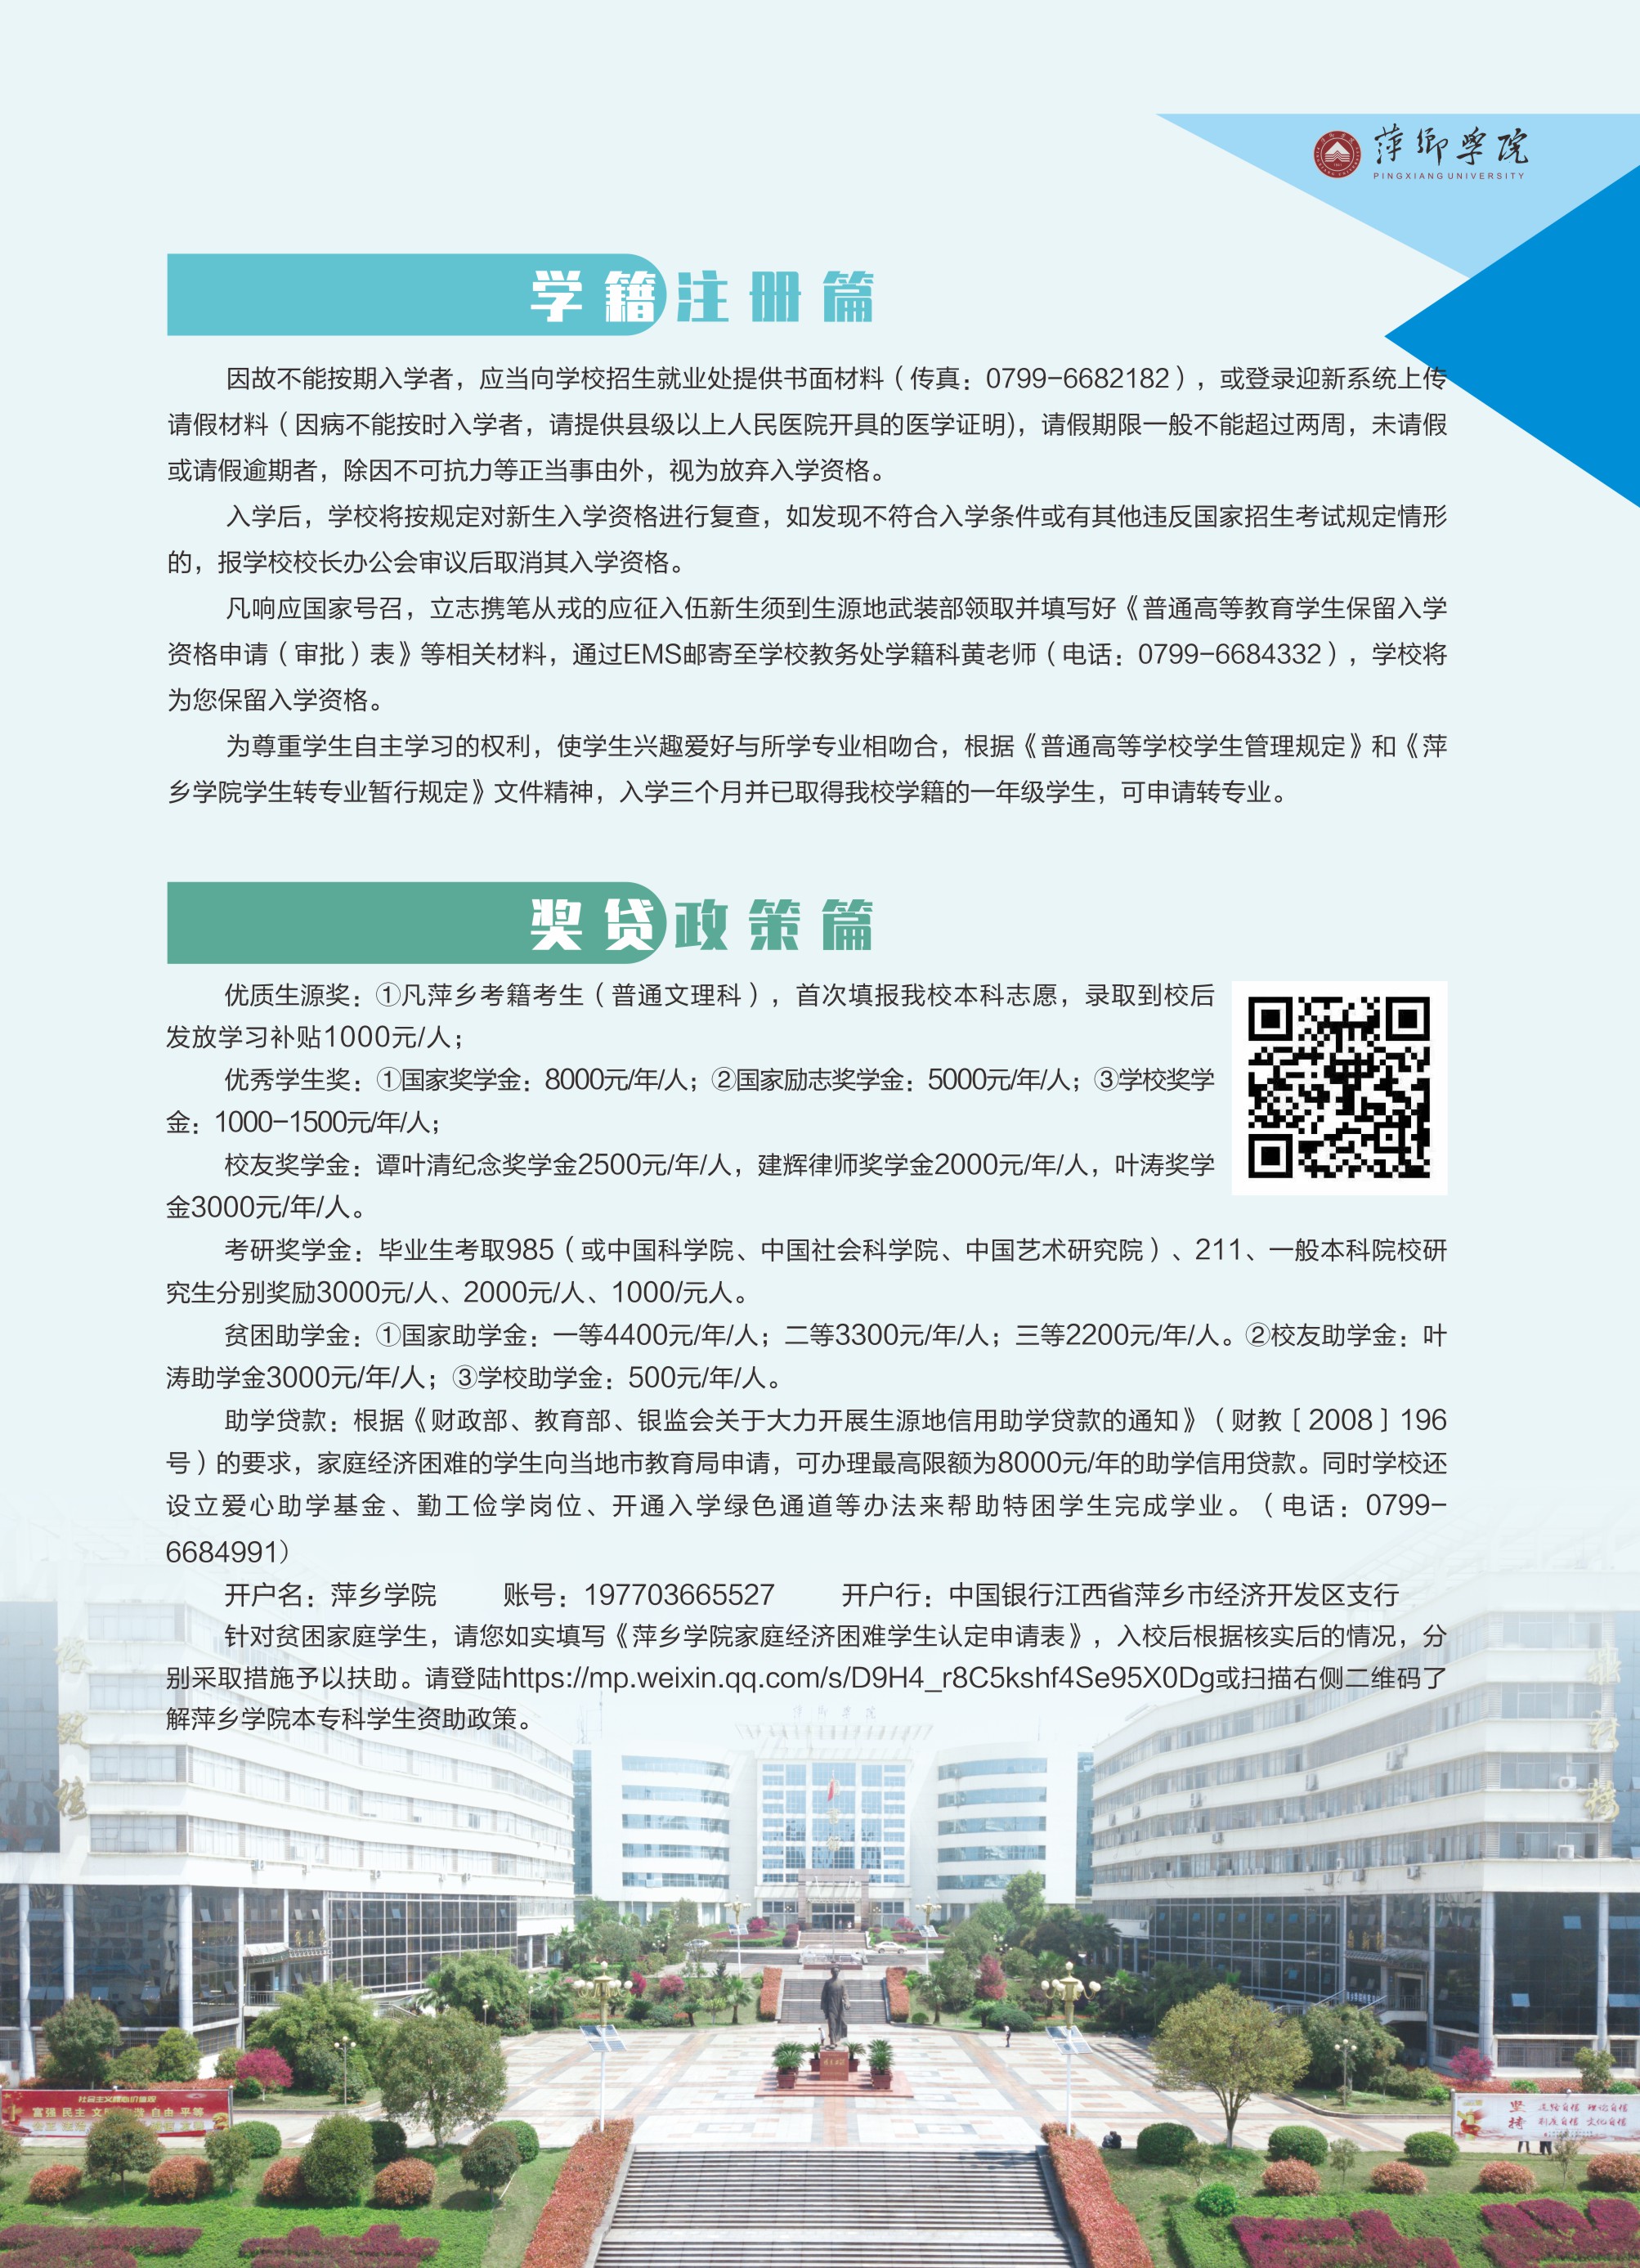 萍乡学院2021年新生入学指南